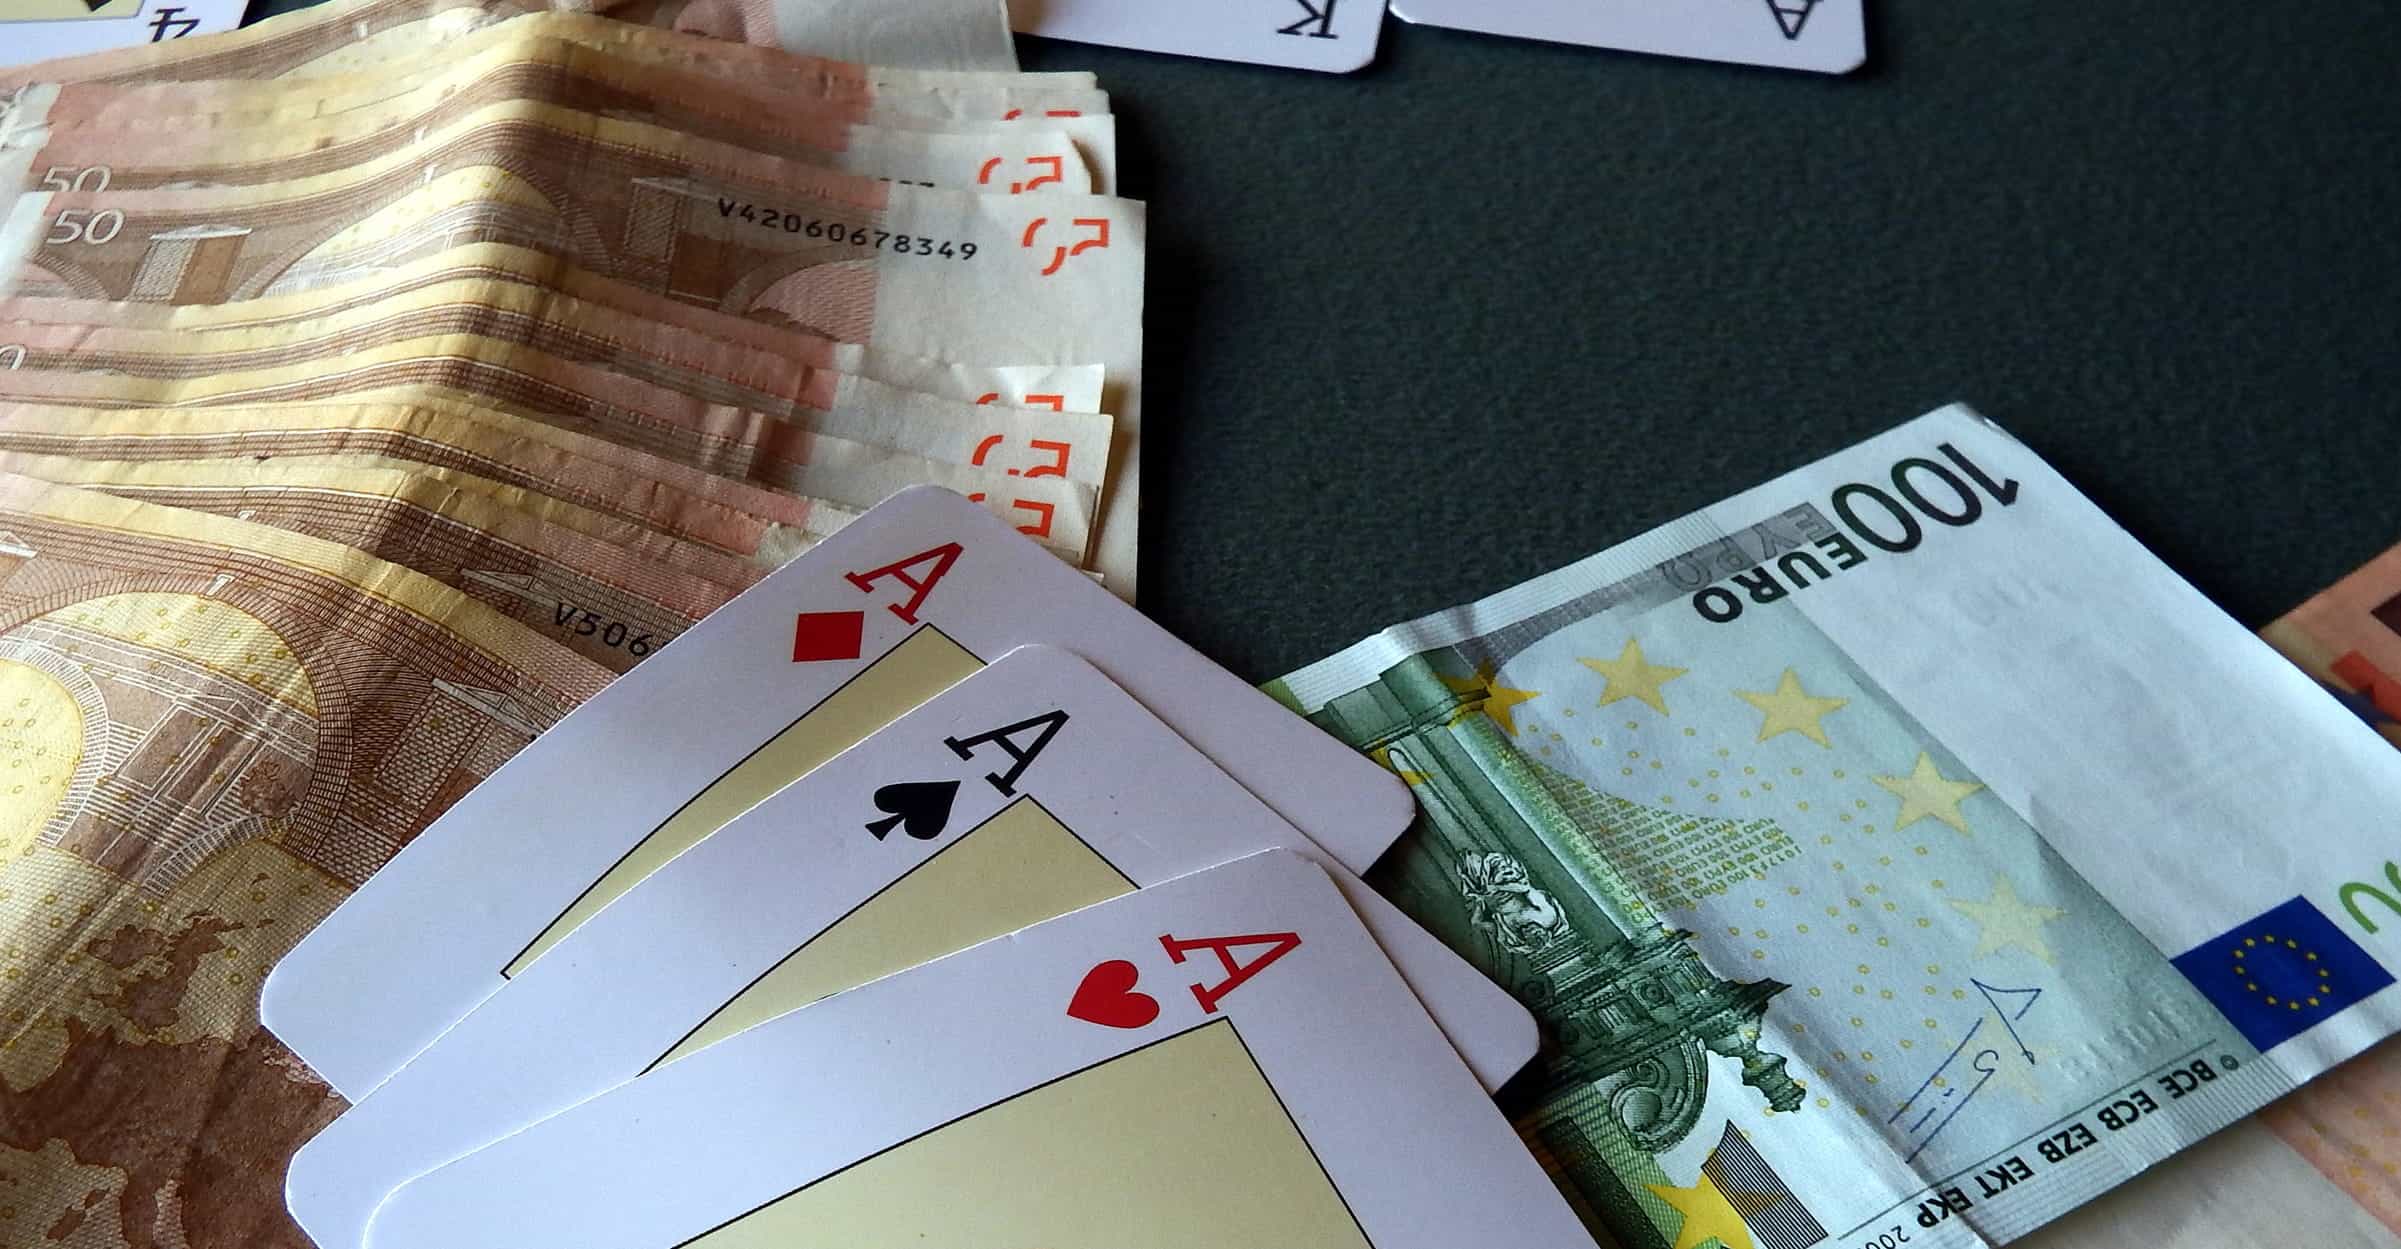 Tiga ace dan setumpuk uang tunai di atas meja poker.